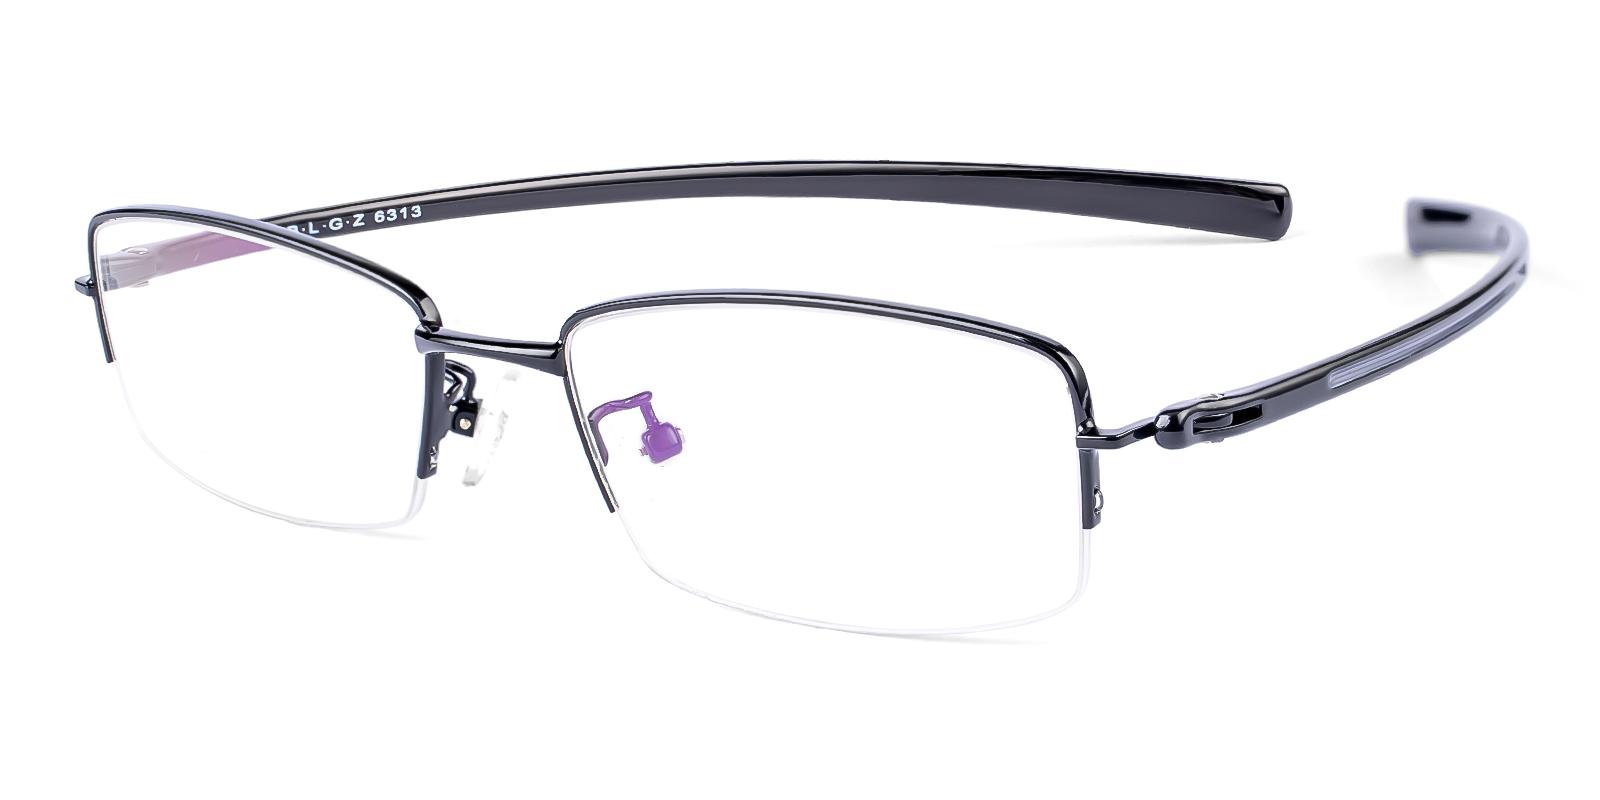 Olate Black Metal , TR Eyeglasses , NosePads Frames from ABBE Glasses